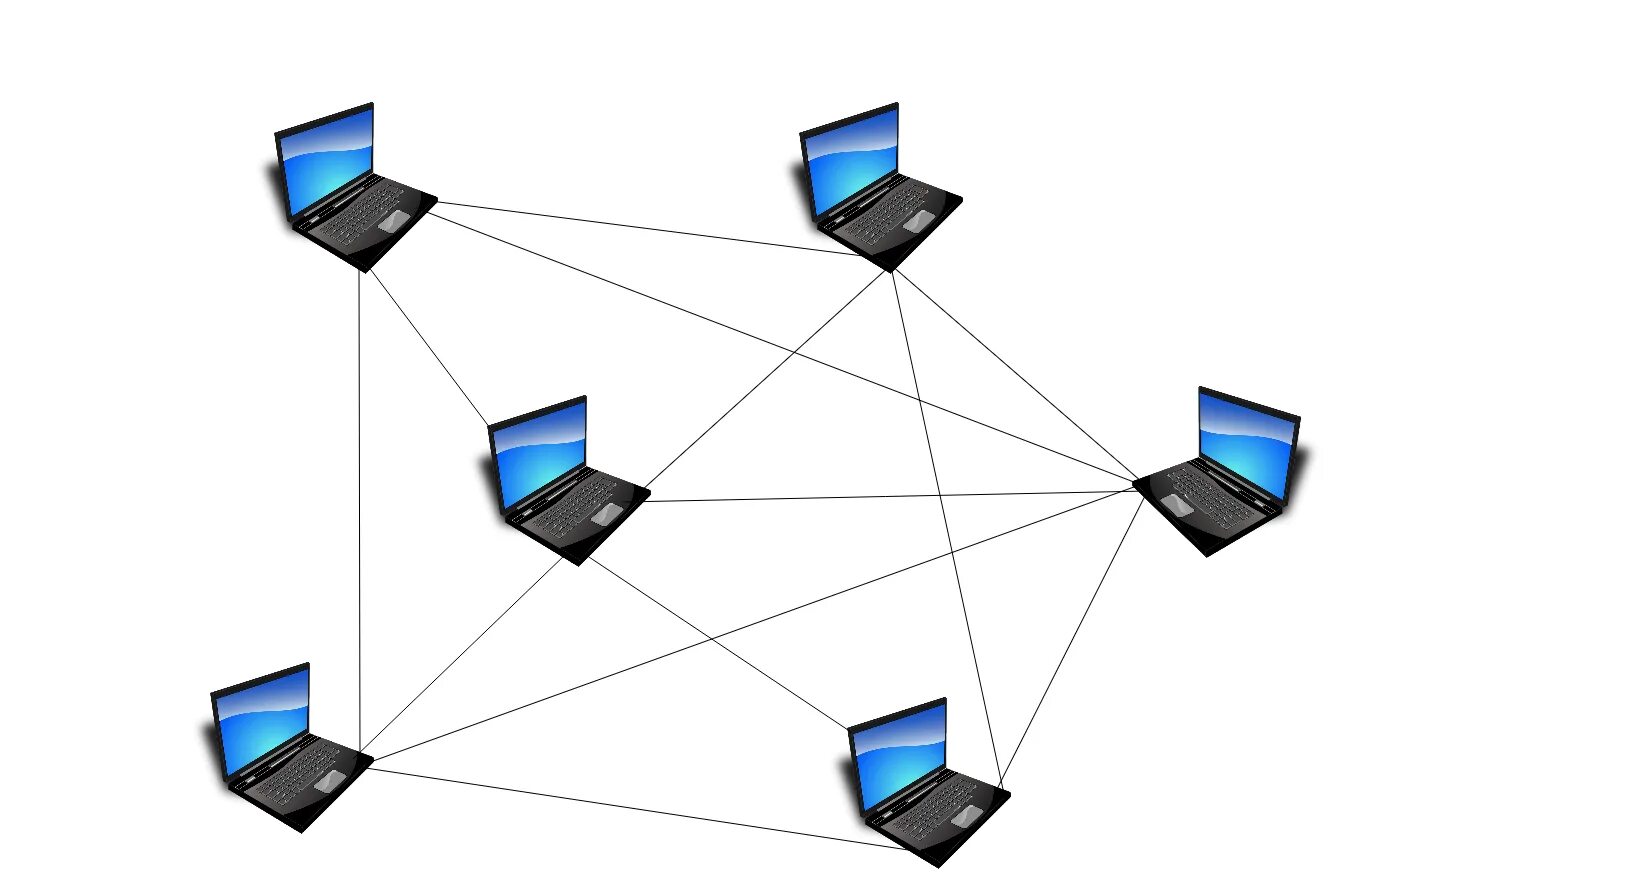 Peers windows. Локальная сеть ЛВС. Одноранговые локальные сети. Локальная компьютерная сеть одноранговая. Одноранговая топология.